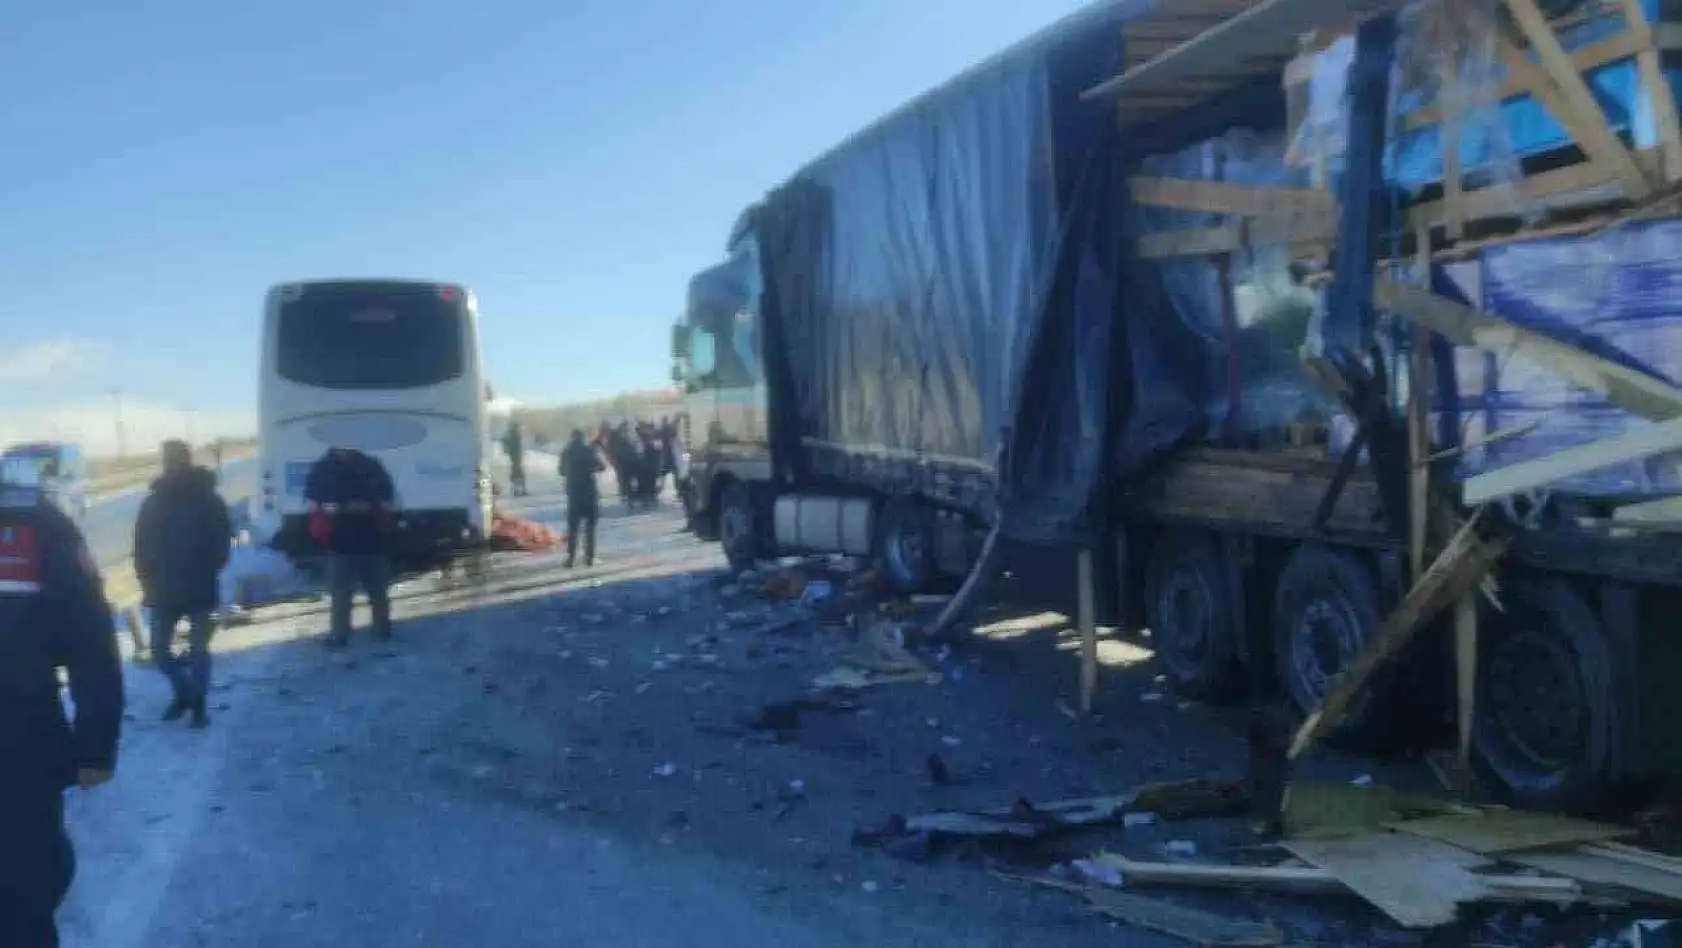 Sivas'ta otobüs kazası, 1 ölü çok sayıda yaralı